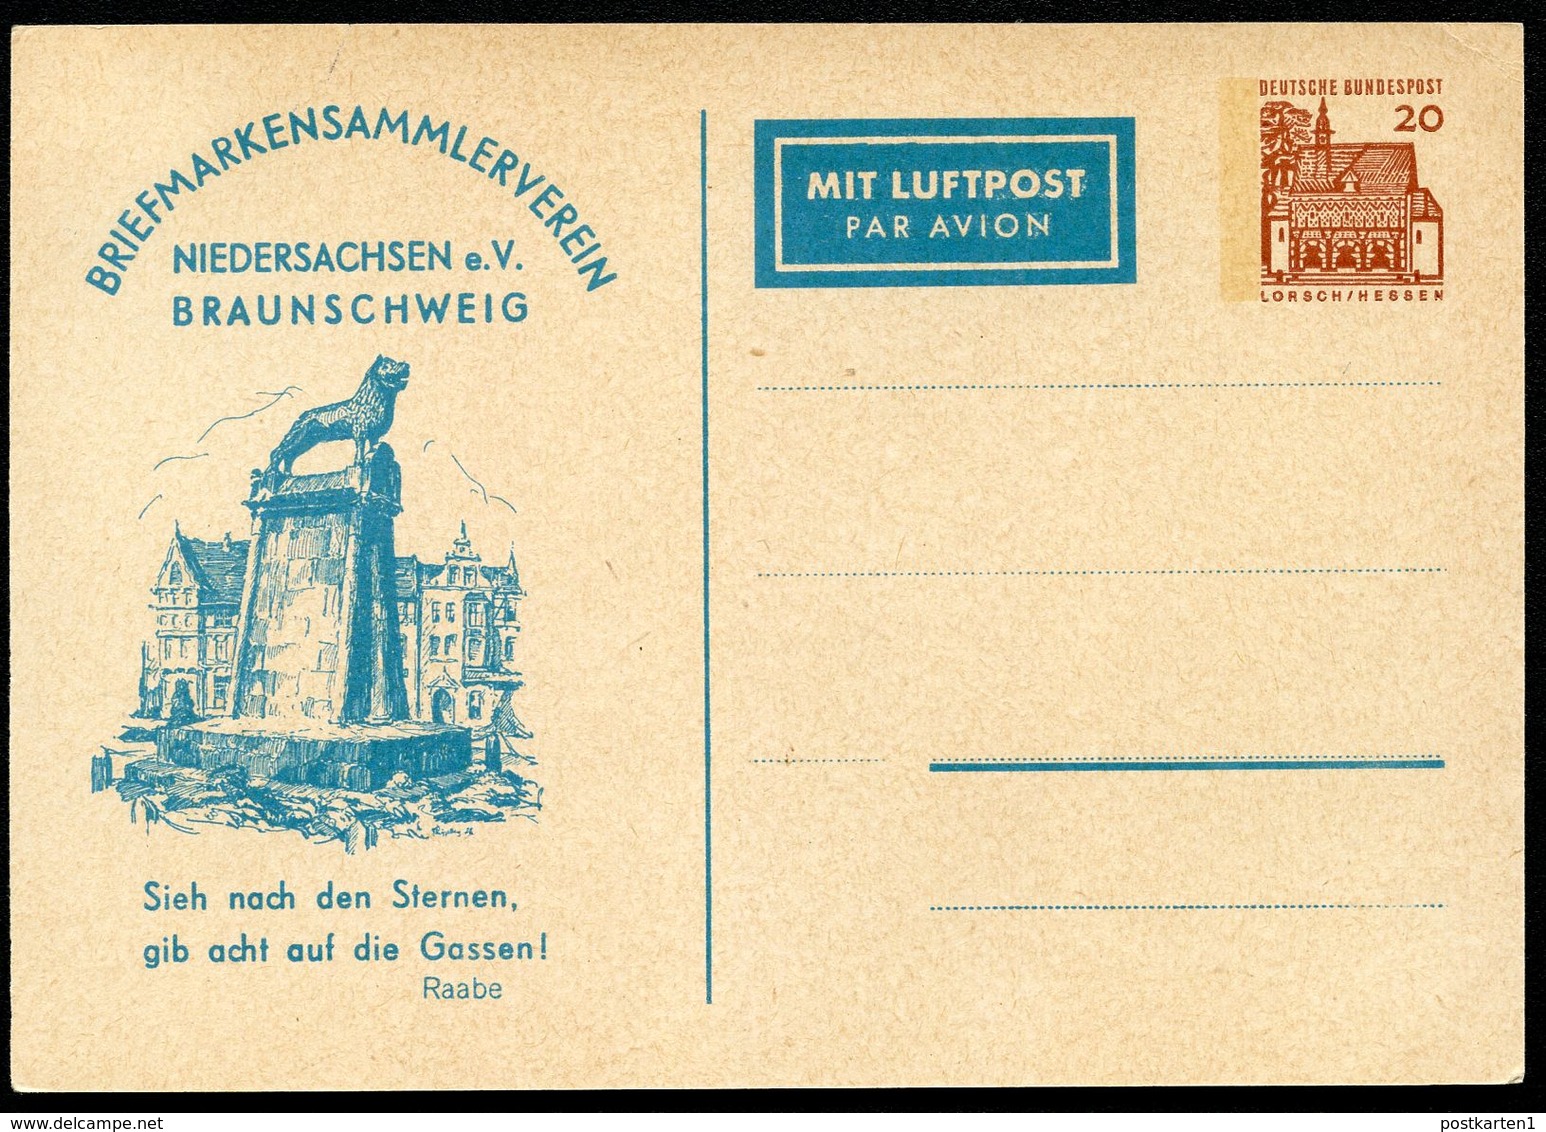 Bund PP35 B2/001 LÖWENDENKMAL BRAUNSCHWEIG 1966  NGK 10,00 € - Private Postcards - Mint